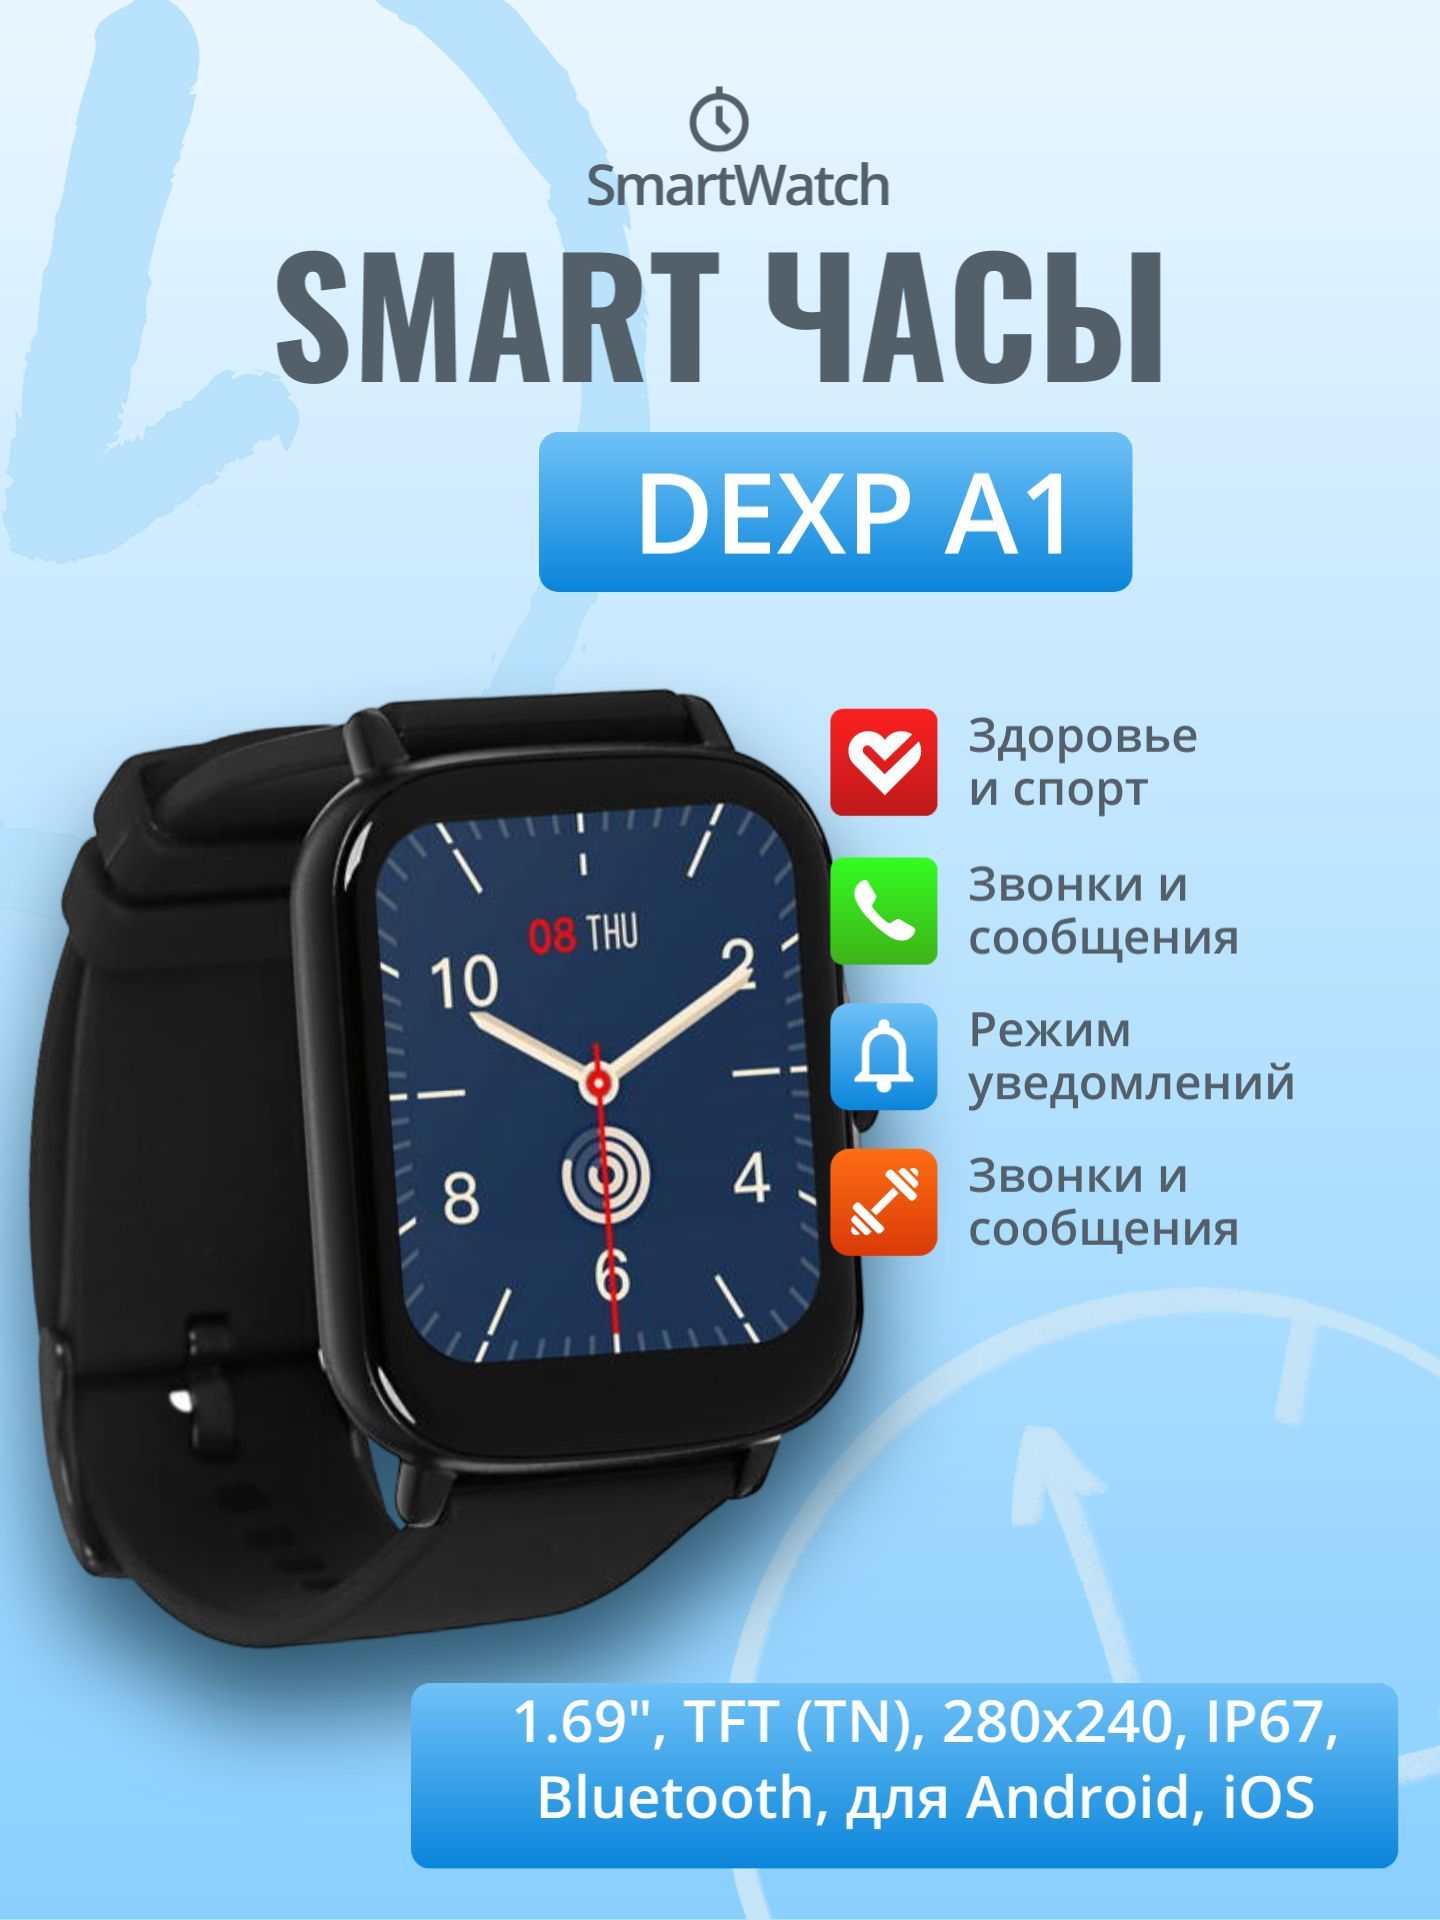 Настроить часы dexp. Смарт часы дексп. Часы электронные DEXP. Зарядка для смарт часов DEXP. Зарядка часы DEXP a1.